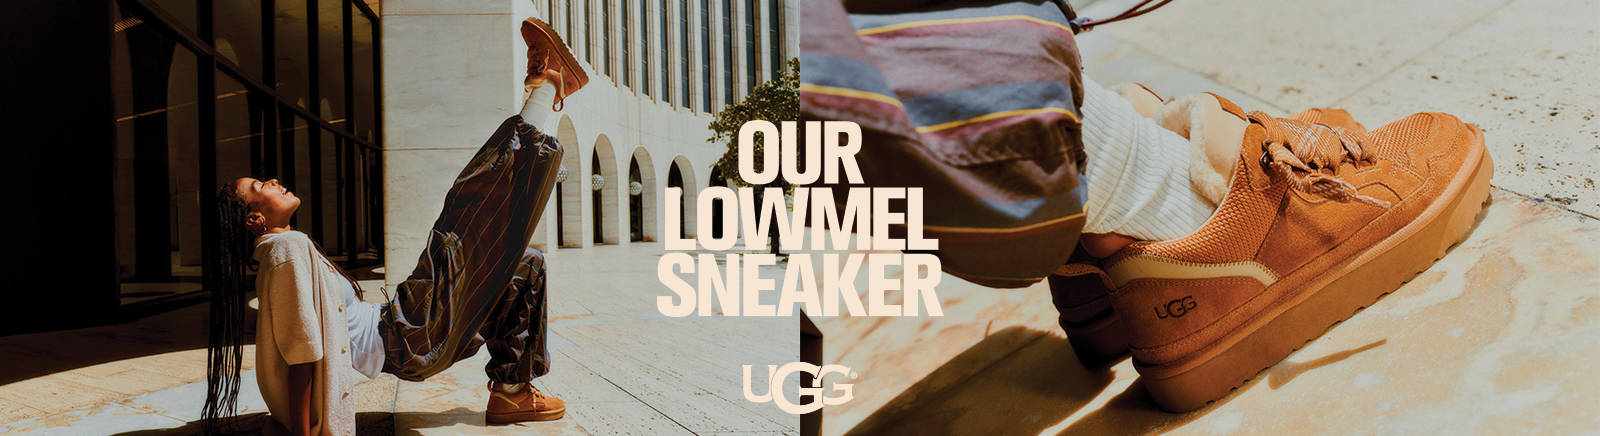 Prange: UGG Sneaker für Damen kaufen online shoppen